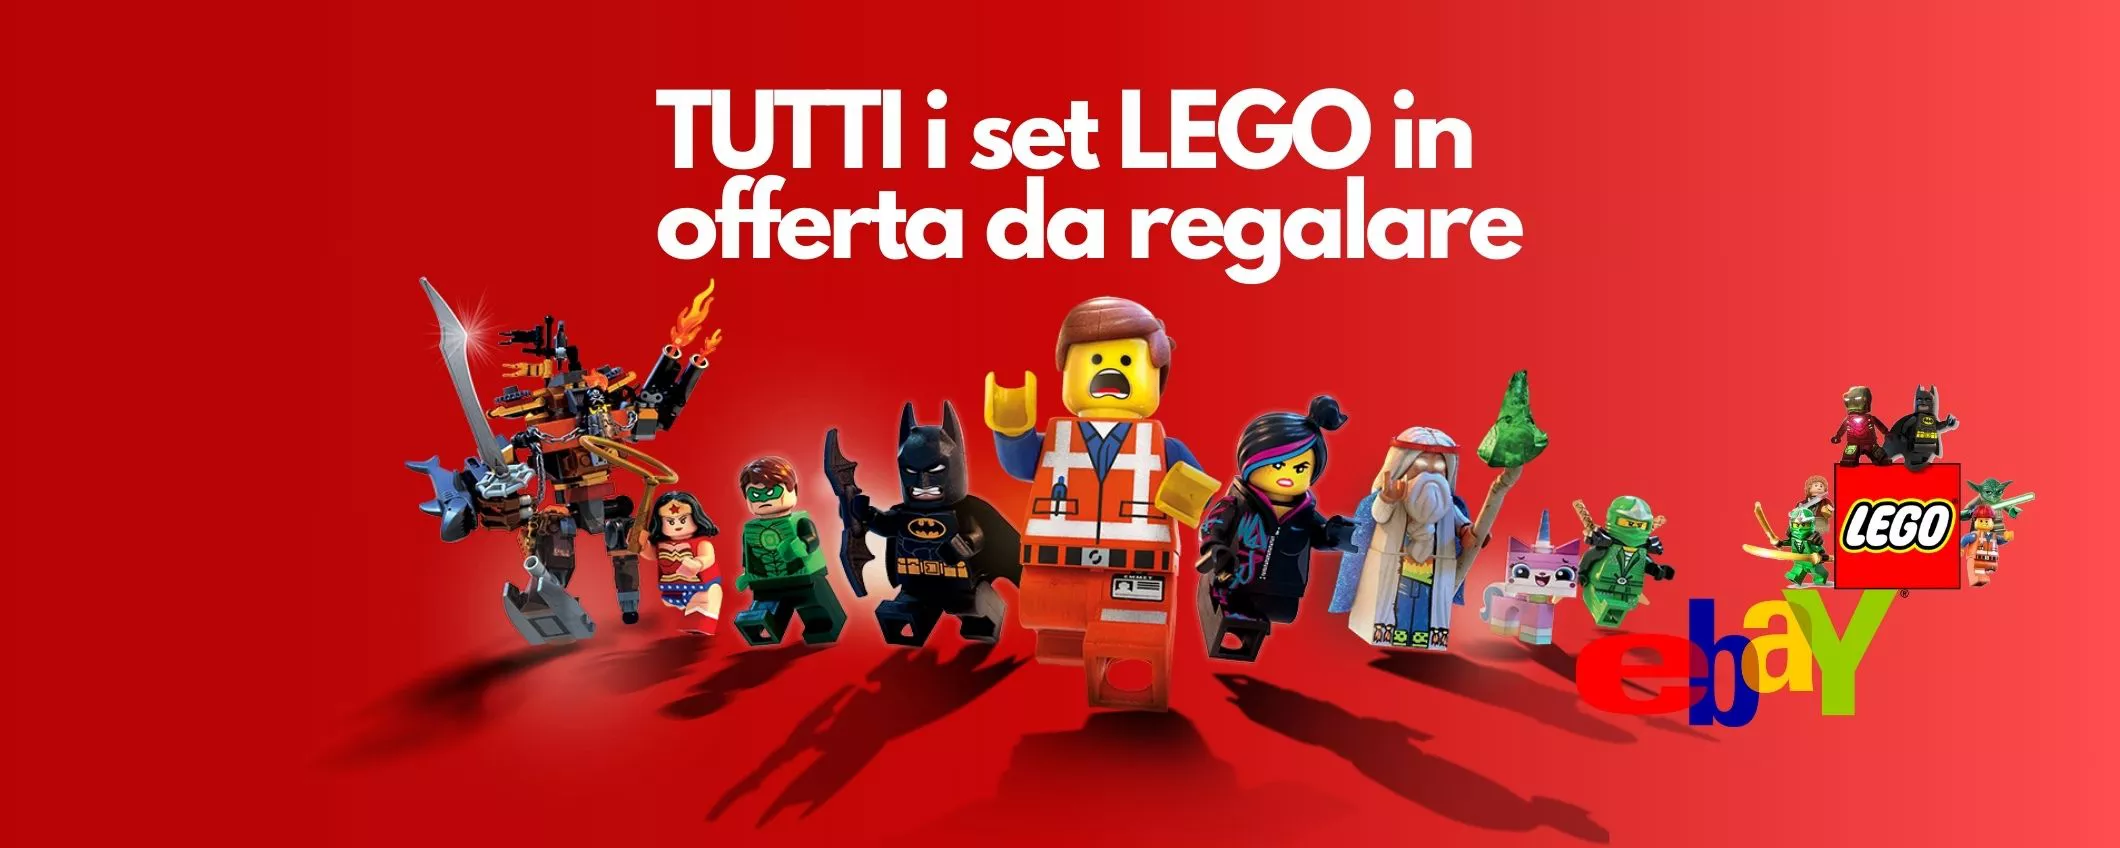 LEGO, tutti i migliori set in offerta su  da REGALARE a Natale - Webnews